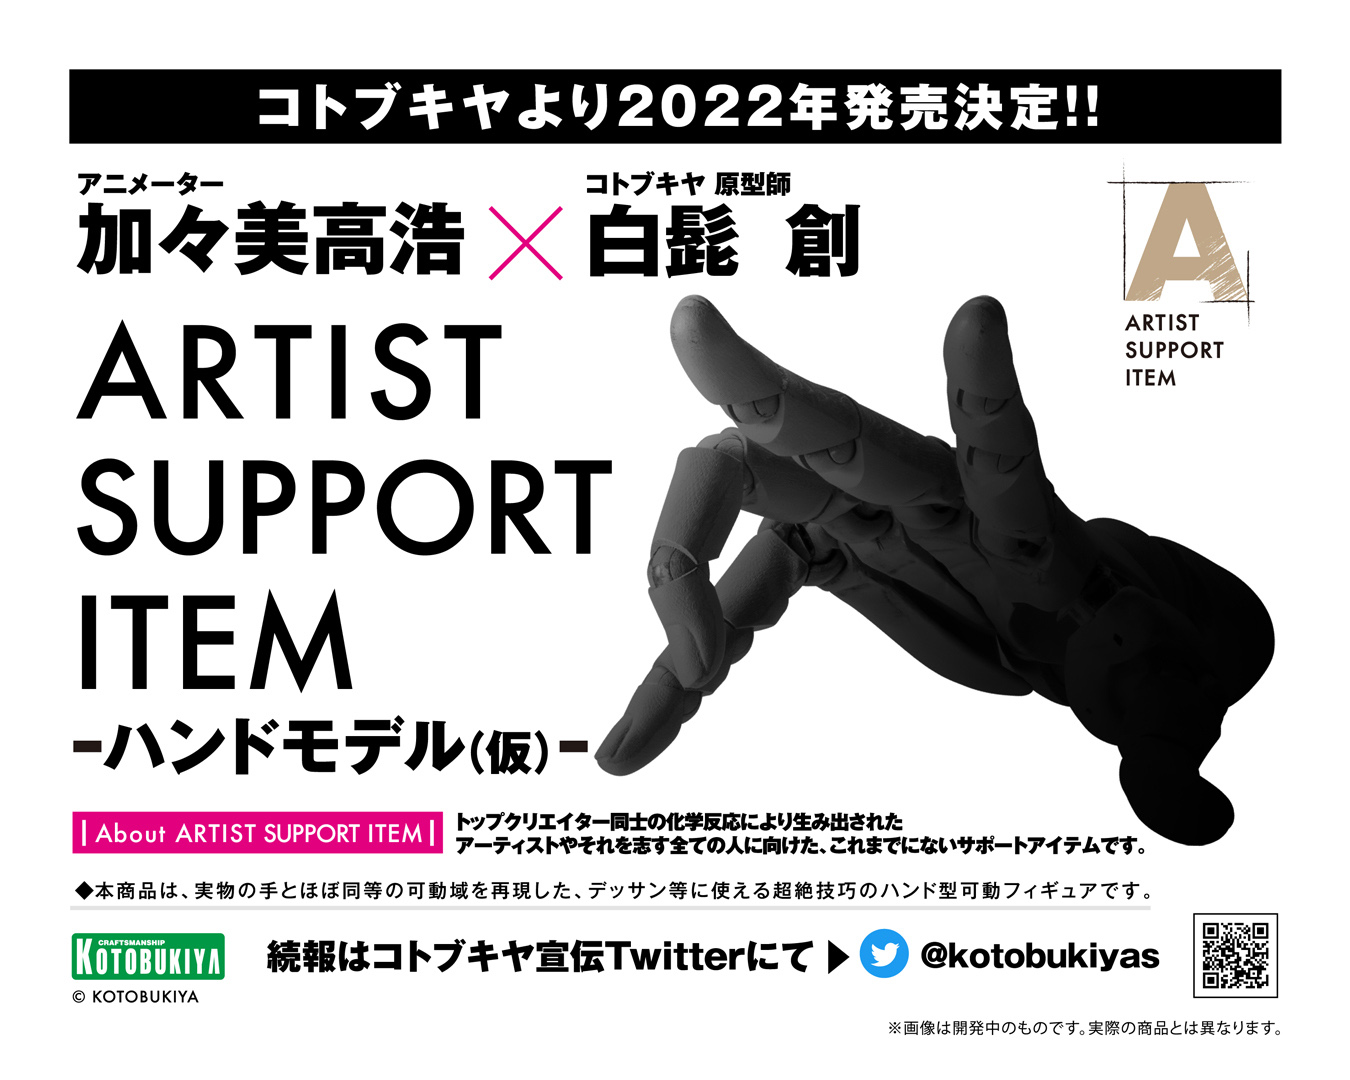 コトブキヤ 新シリーズ Artist Support Item が始動 ハンド型可動フィギュア ハンドモデル 仮 を発表 Hobby Watch